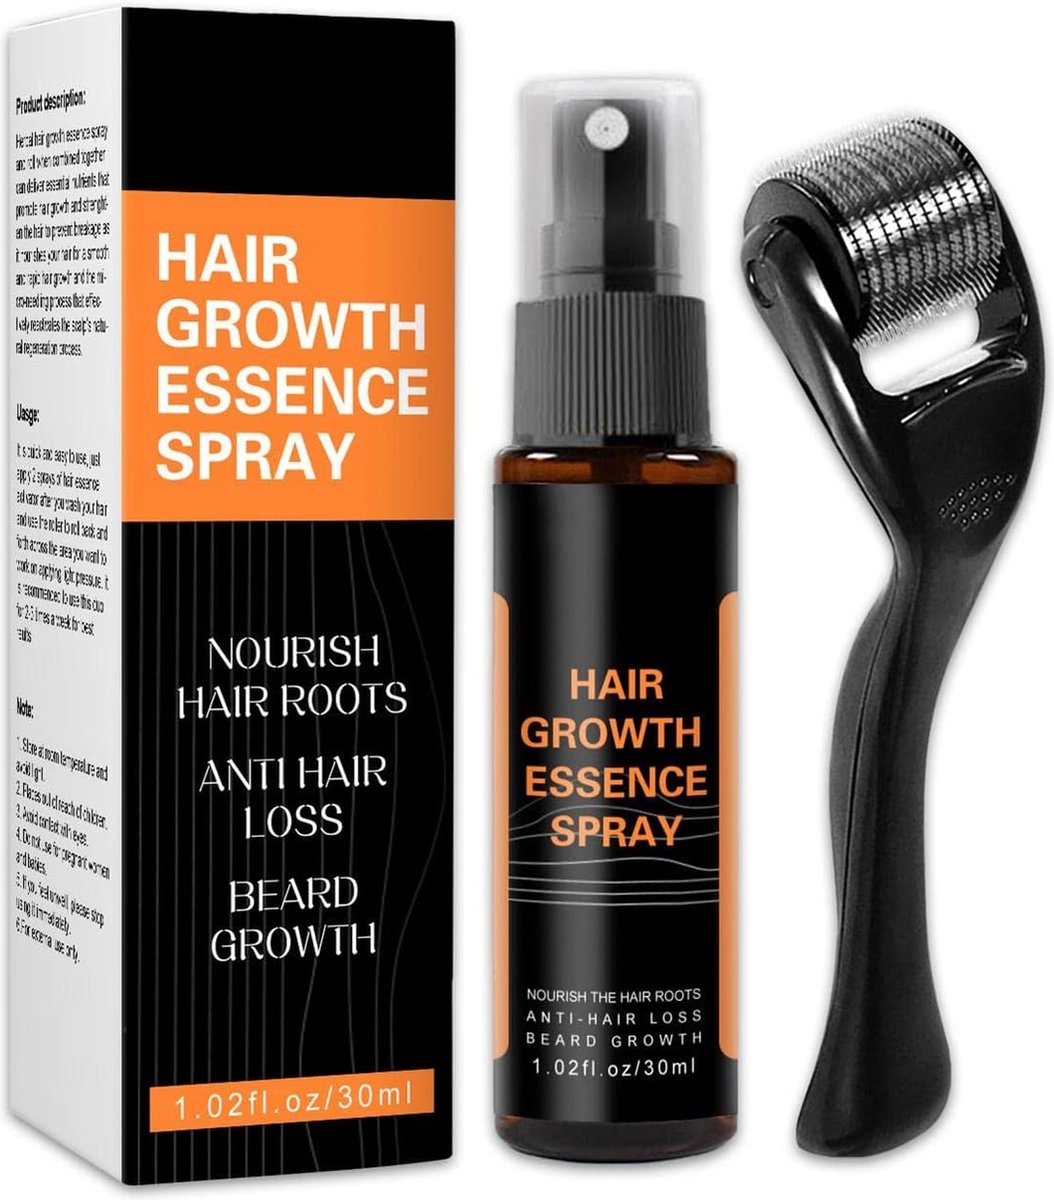 Haargroei Stimulator Baardgroei Spray + Dermaroller - Minoxidil 5% Alternatief - Haargroei serum - Haargroei versneller - Haargroeimiddel - Haaruitval Vrouwen - Haaruitval Mannen - Haargroei producten vrouwen - Haargroei olie - Haargroei Mannen